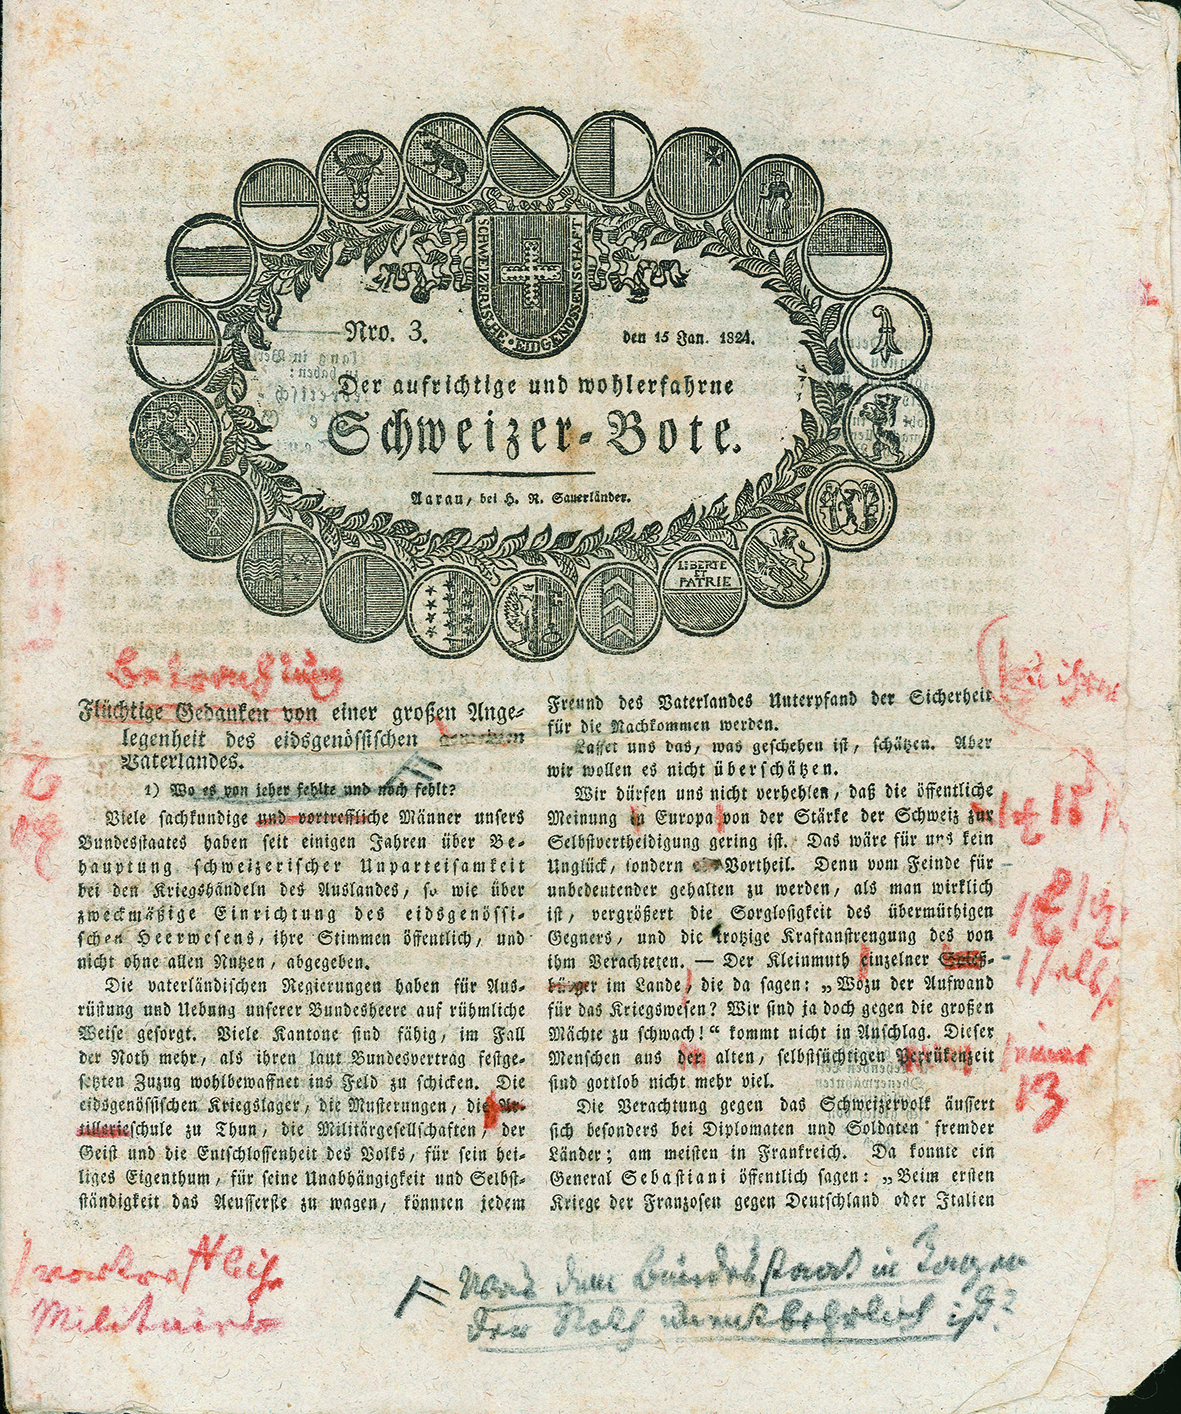 Probedruck des Schweizerboten vom 15 Januar 1824 mit Korrekturen Zschokkes für den Setzer. Der Artikel auf der Frontseite konnte Zschokke jedoch wegen der Pressezensur nicht veröffentlichen (Staatsarchiv Aargau).